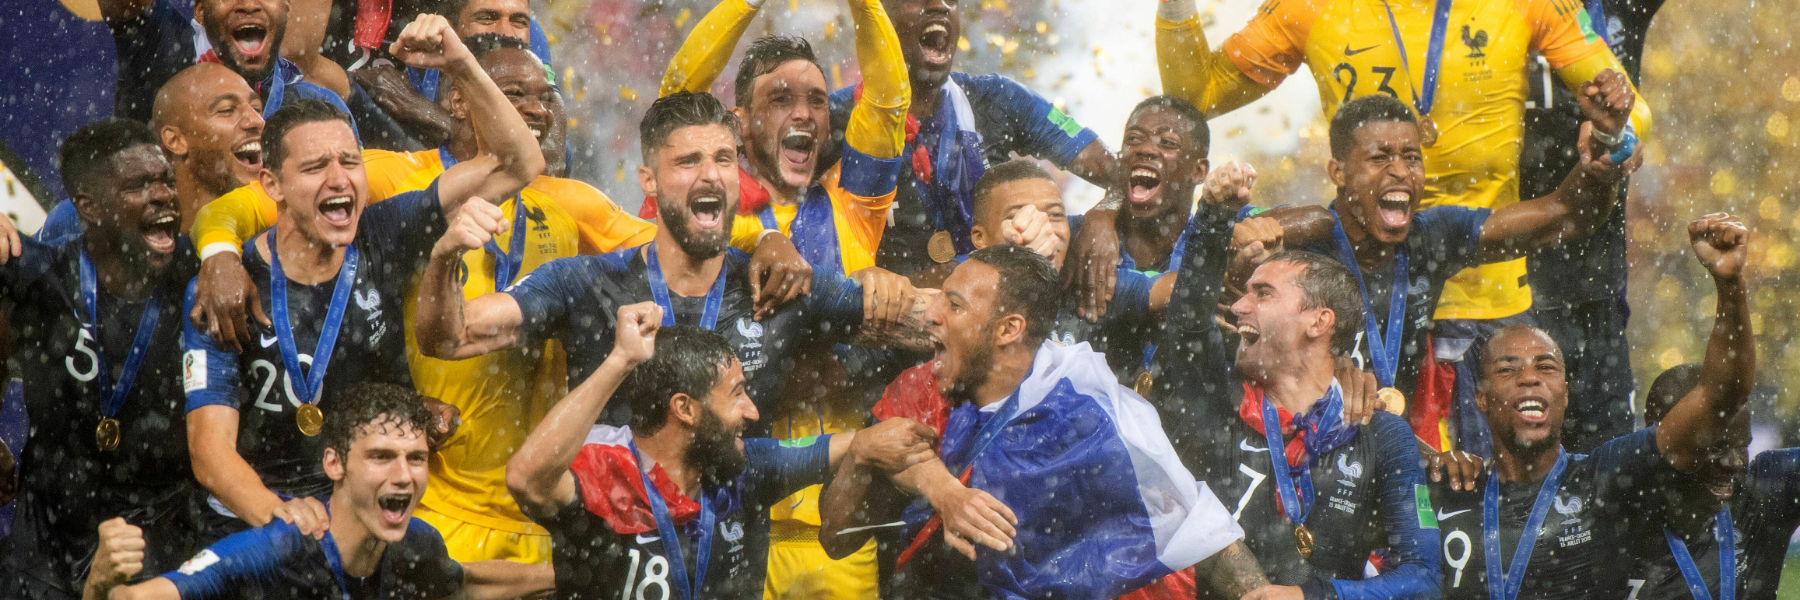 Qualificazioni Mondiali 2022: calendario, gironi e partite in tv